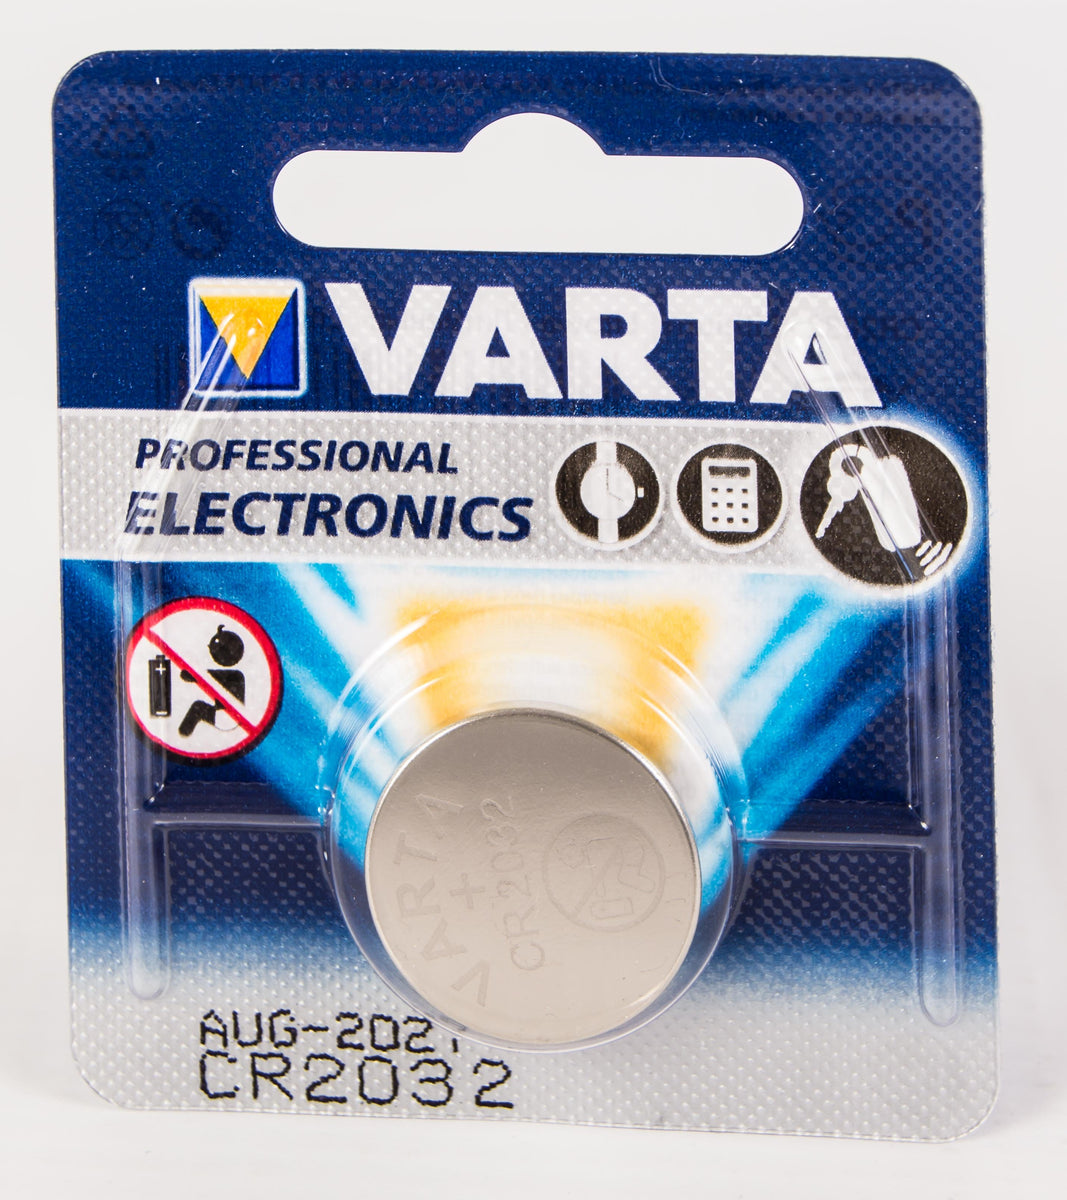 Buy Varta Electronics CR2032 1er Bli cheaply